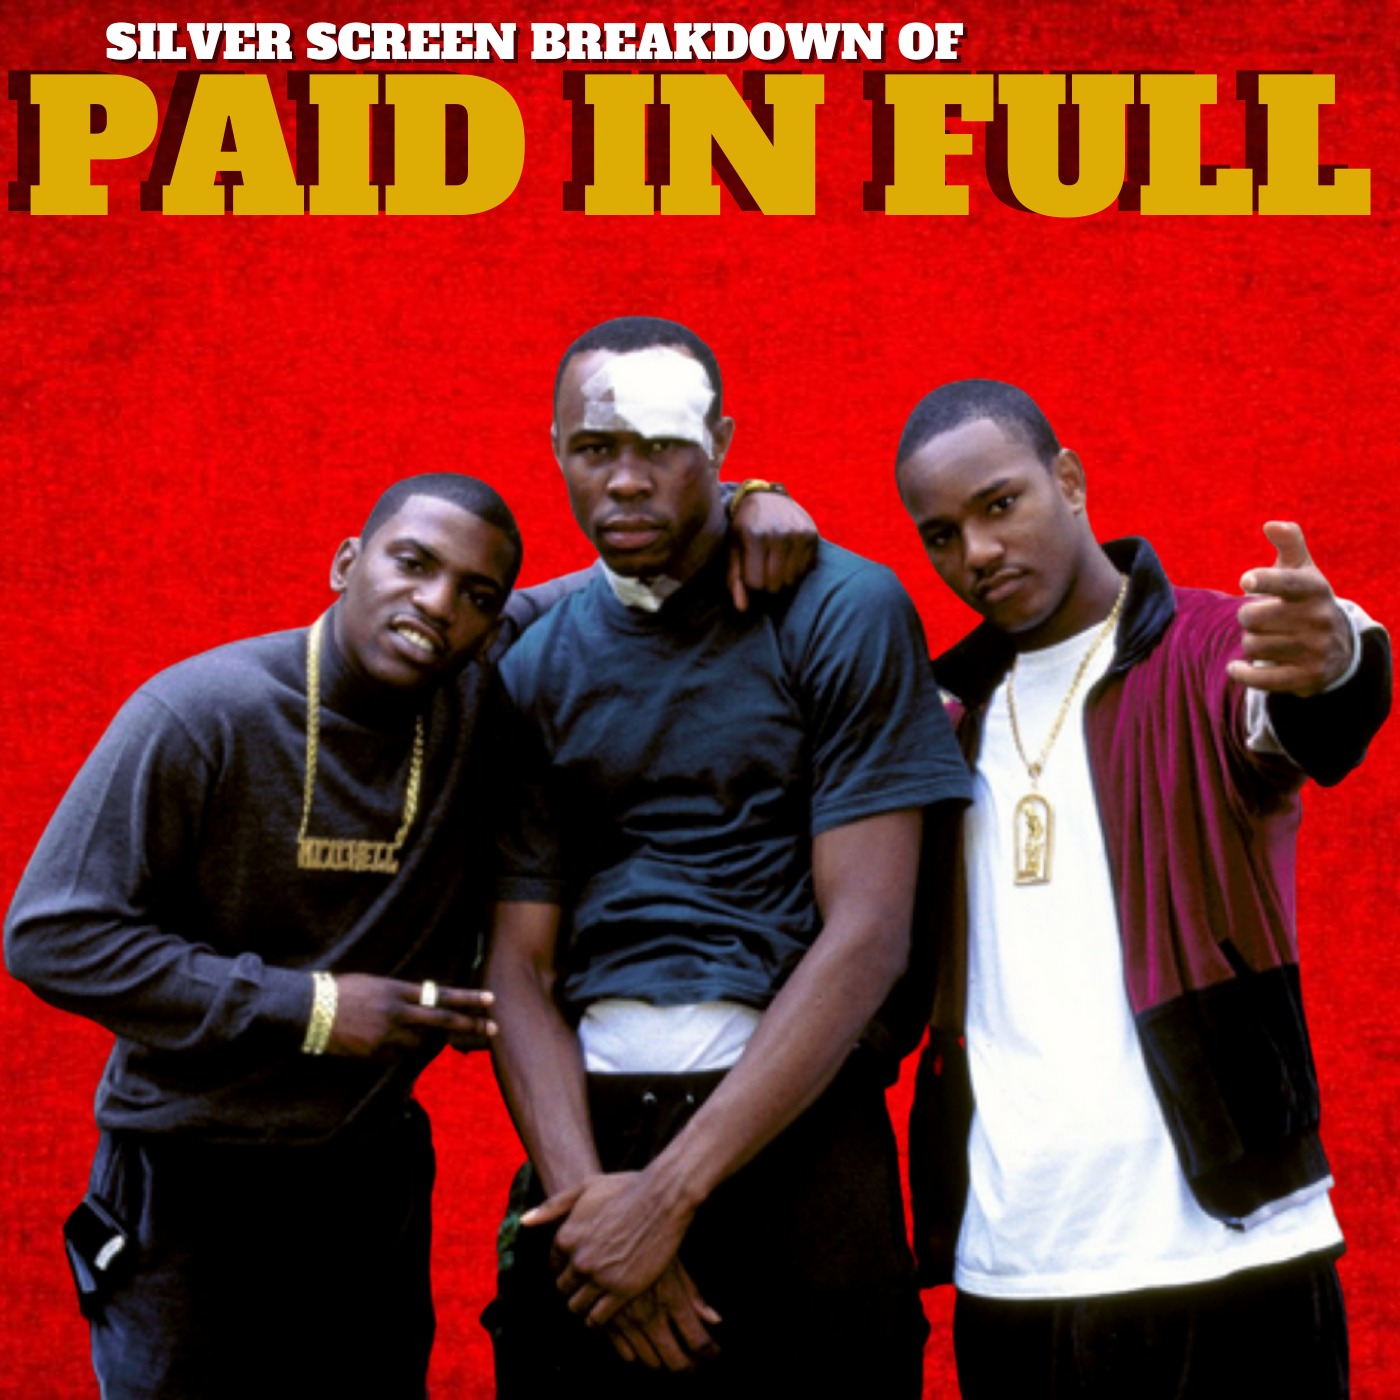 Paid In Full (2002) Film Breakdown | Silver Screen Breakdowns